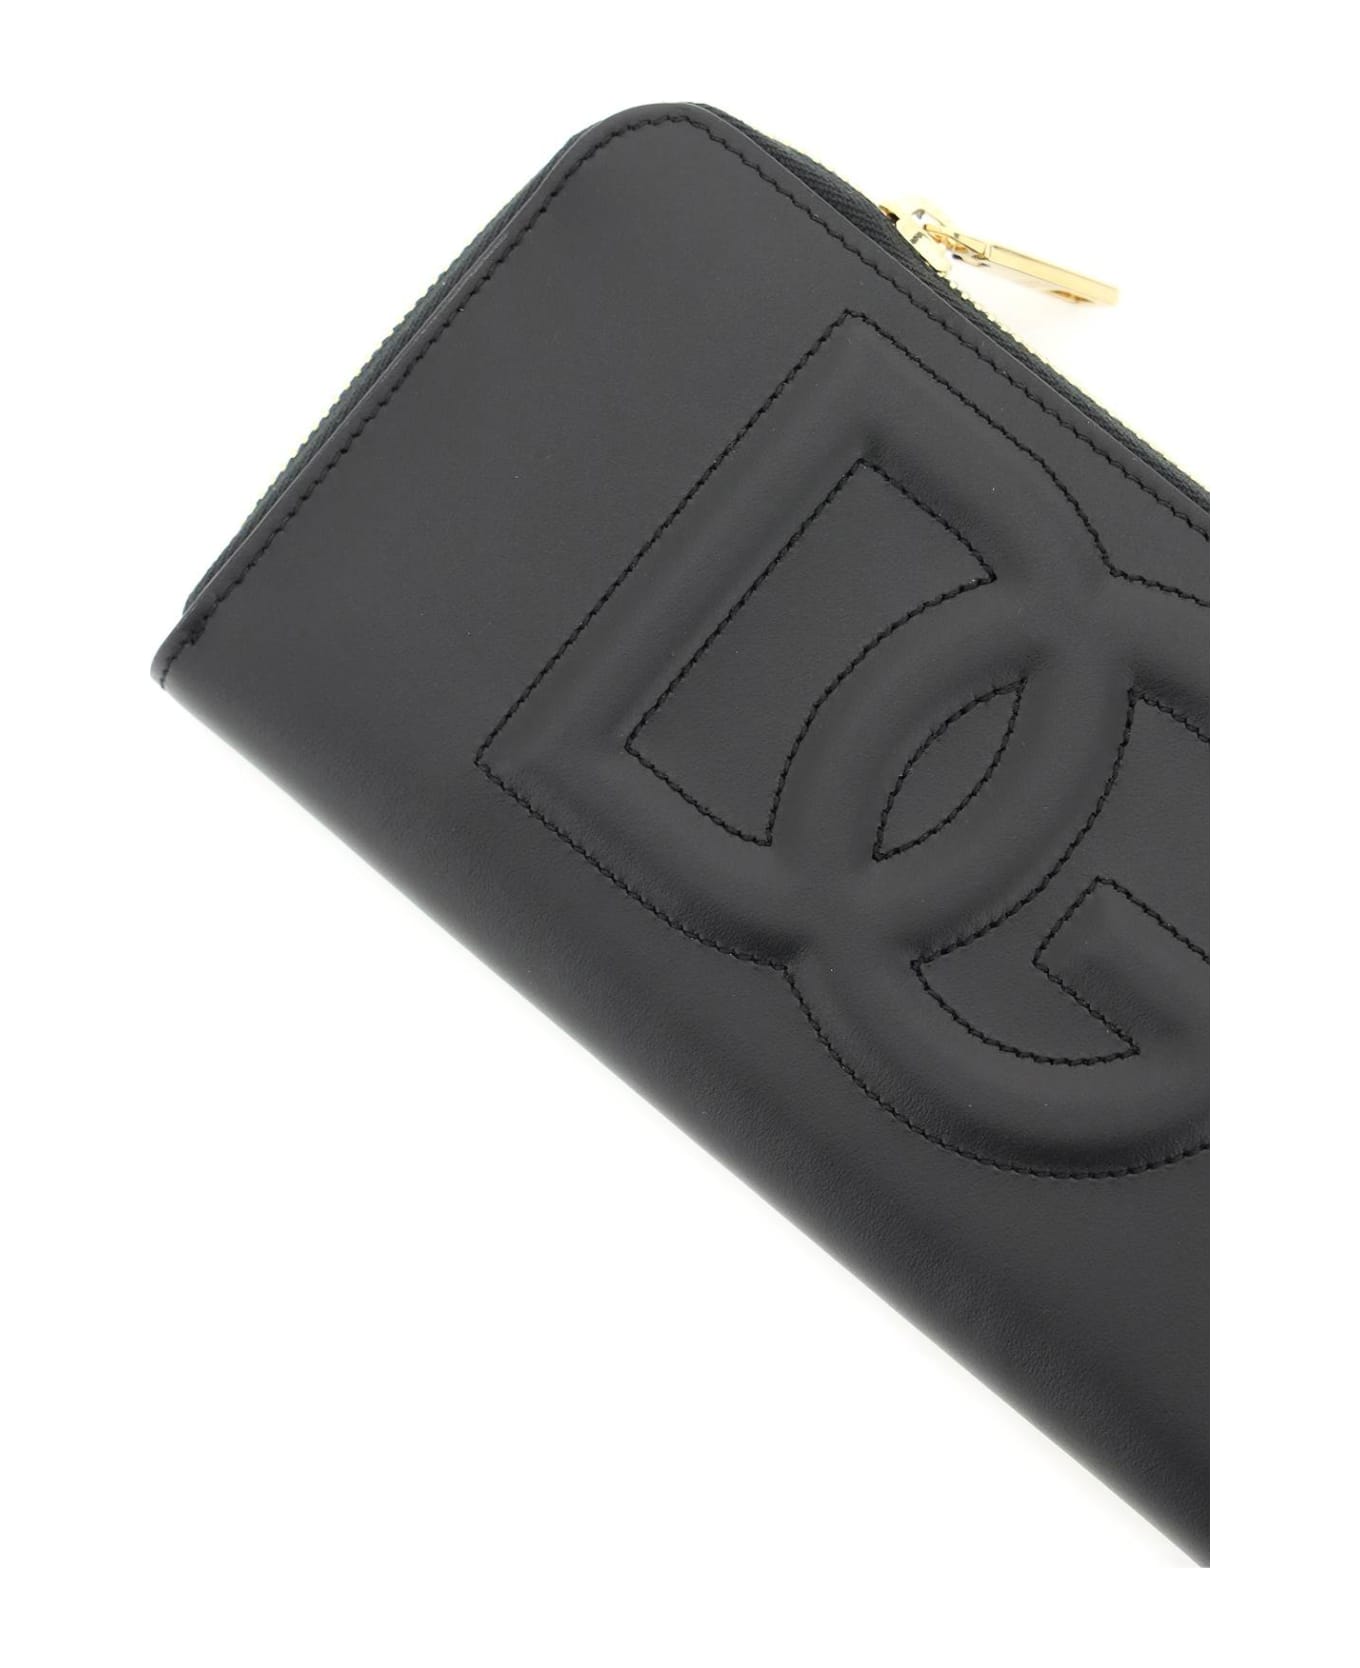 Dolce & Gabbana Zip Around Leather Wallet - Black